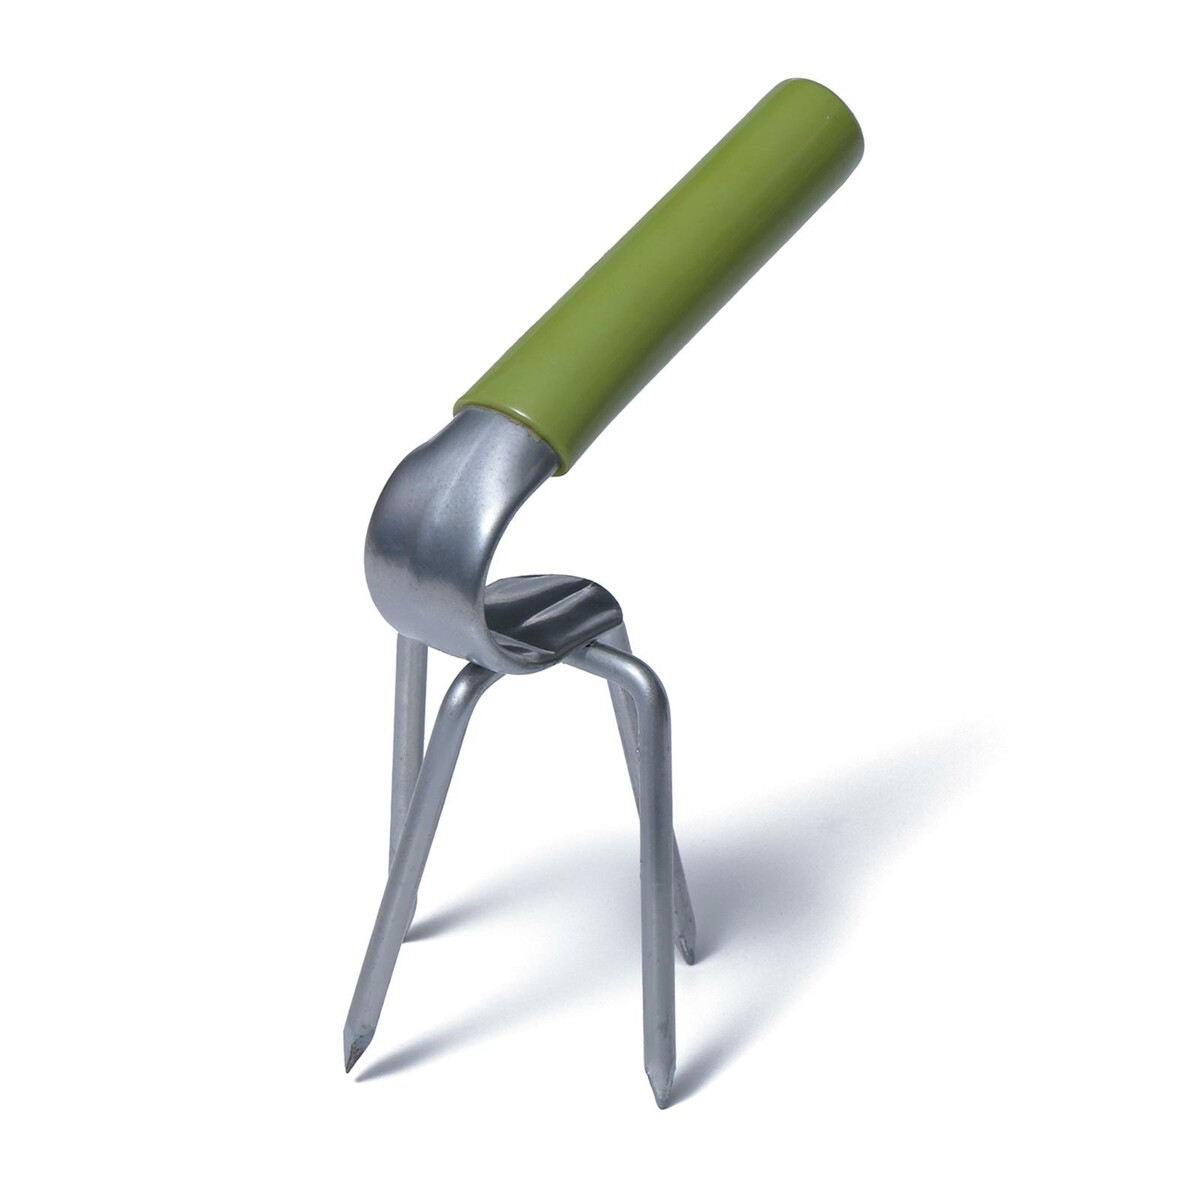 Рыхлитель, длина 15 см, 4 зуба, пластиковая ручка культиватор рыхлитель длина 140 см 3 зубца урожайная сотка